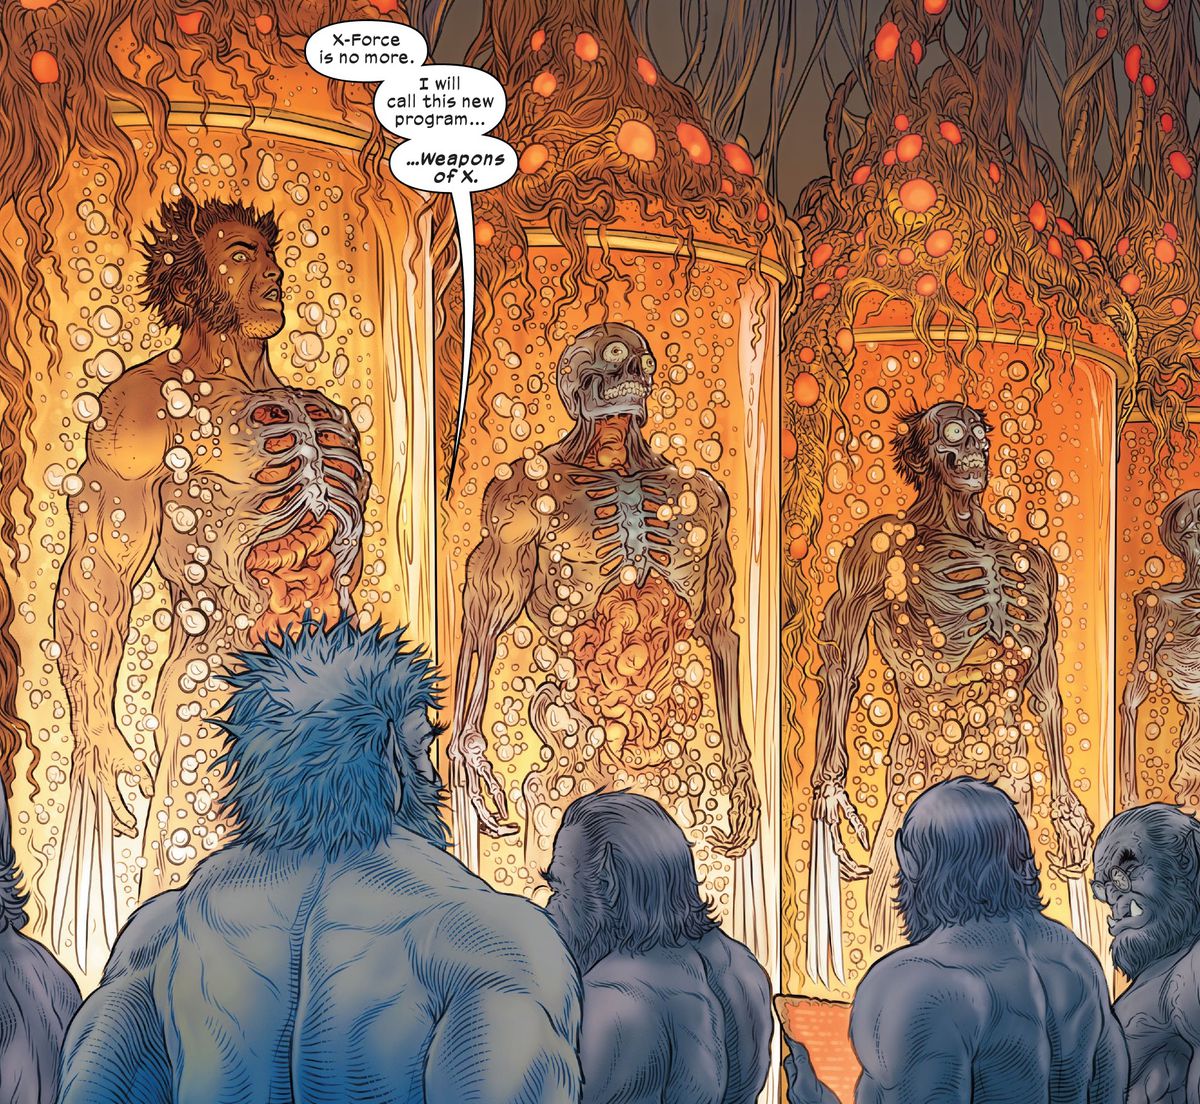 "X-Force finns inte längre", säger Beast till fyra andra Beast-kloner som övervakar flera kar med växande Wolverine-kloner. "Jag kommer att kalla det här nya programmet... Weapons of X," i Wolverine #31 (2023).